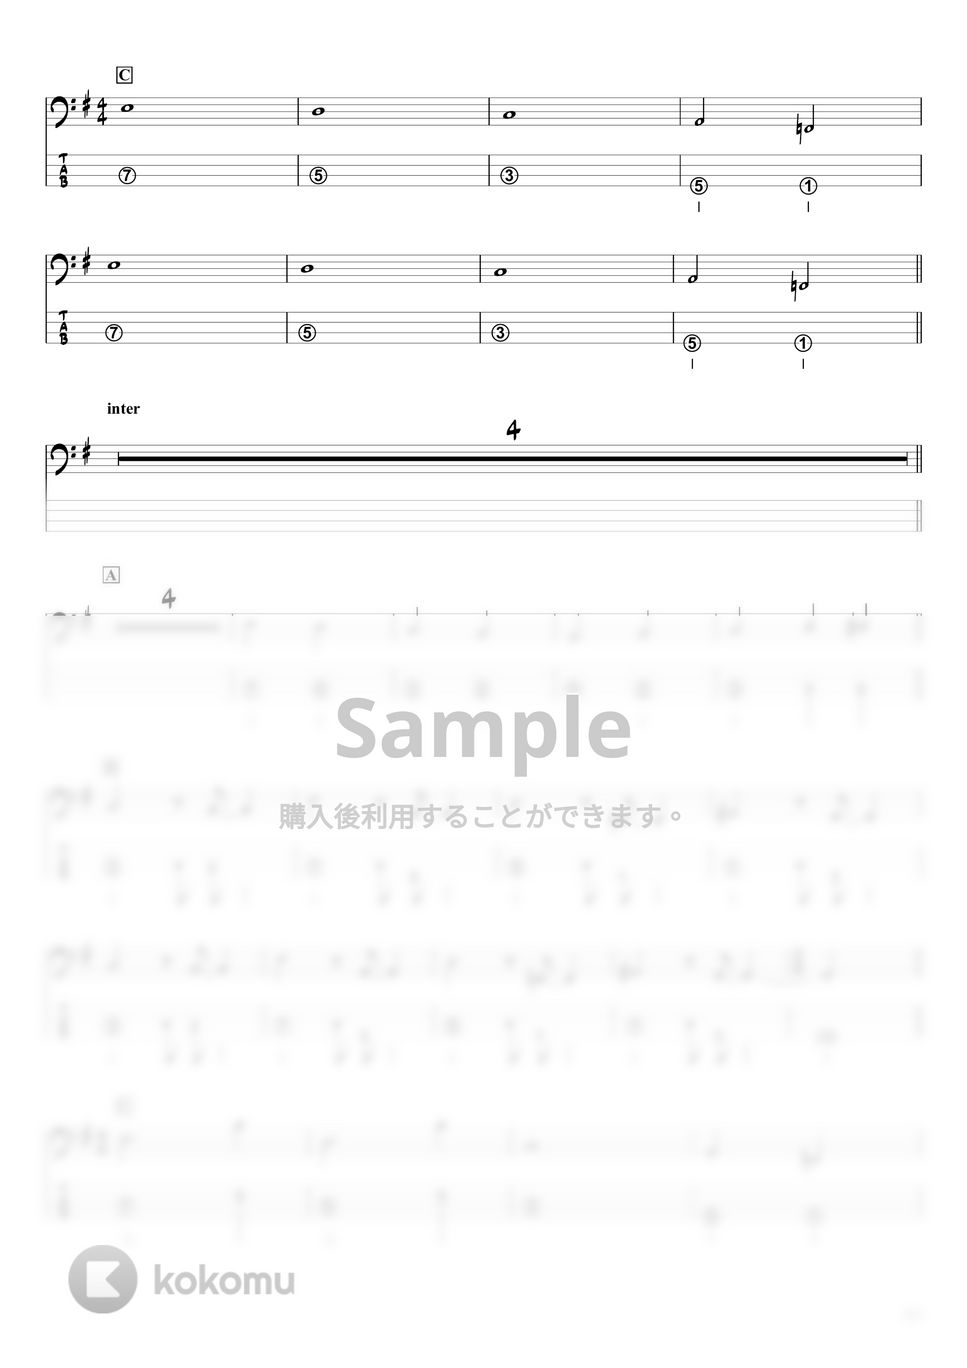 King Gnu - 三文小説 (『ベースTAB譜』☆4弦ベース対応) by swmusic